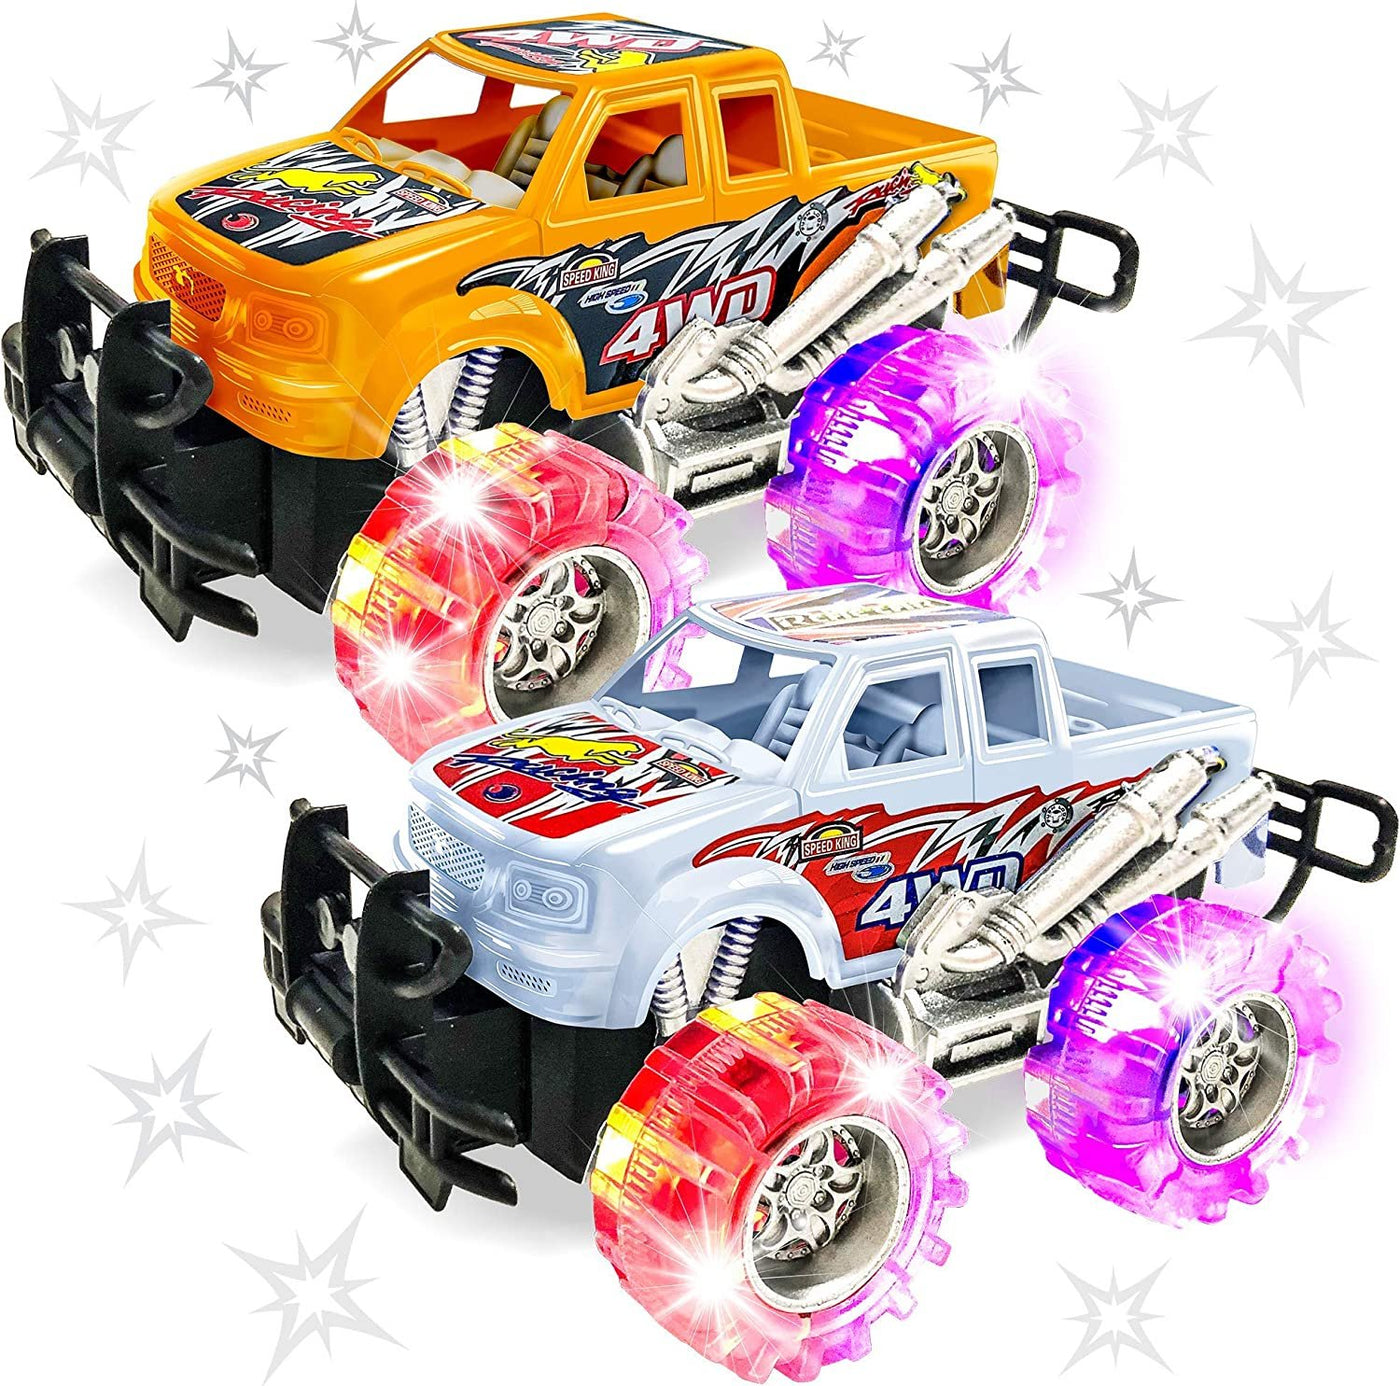 Leggings “Silly Boys Trucks Are For Girls” – Tuff Motorsports Mobile  Detailing